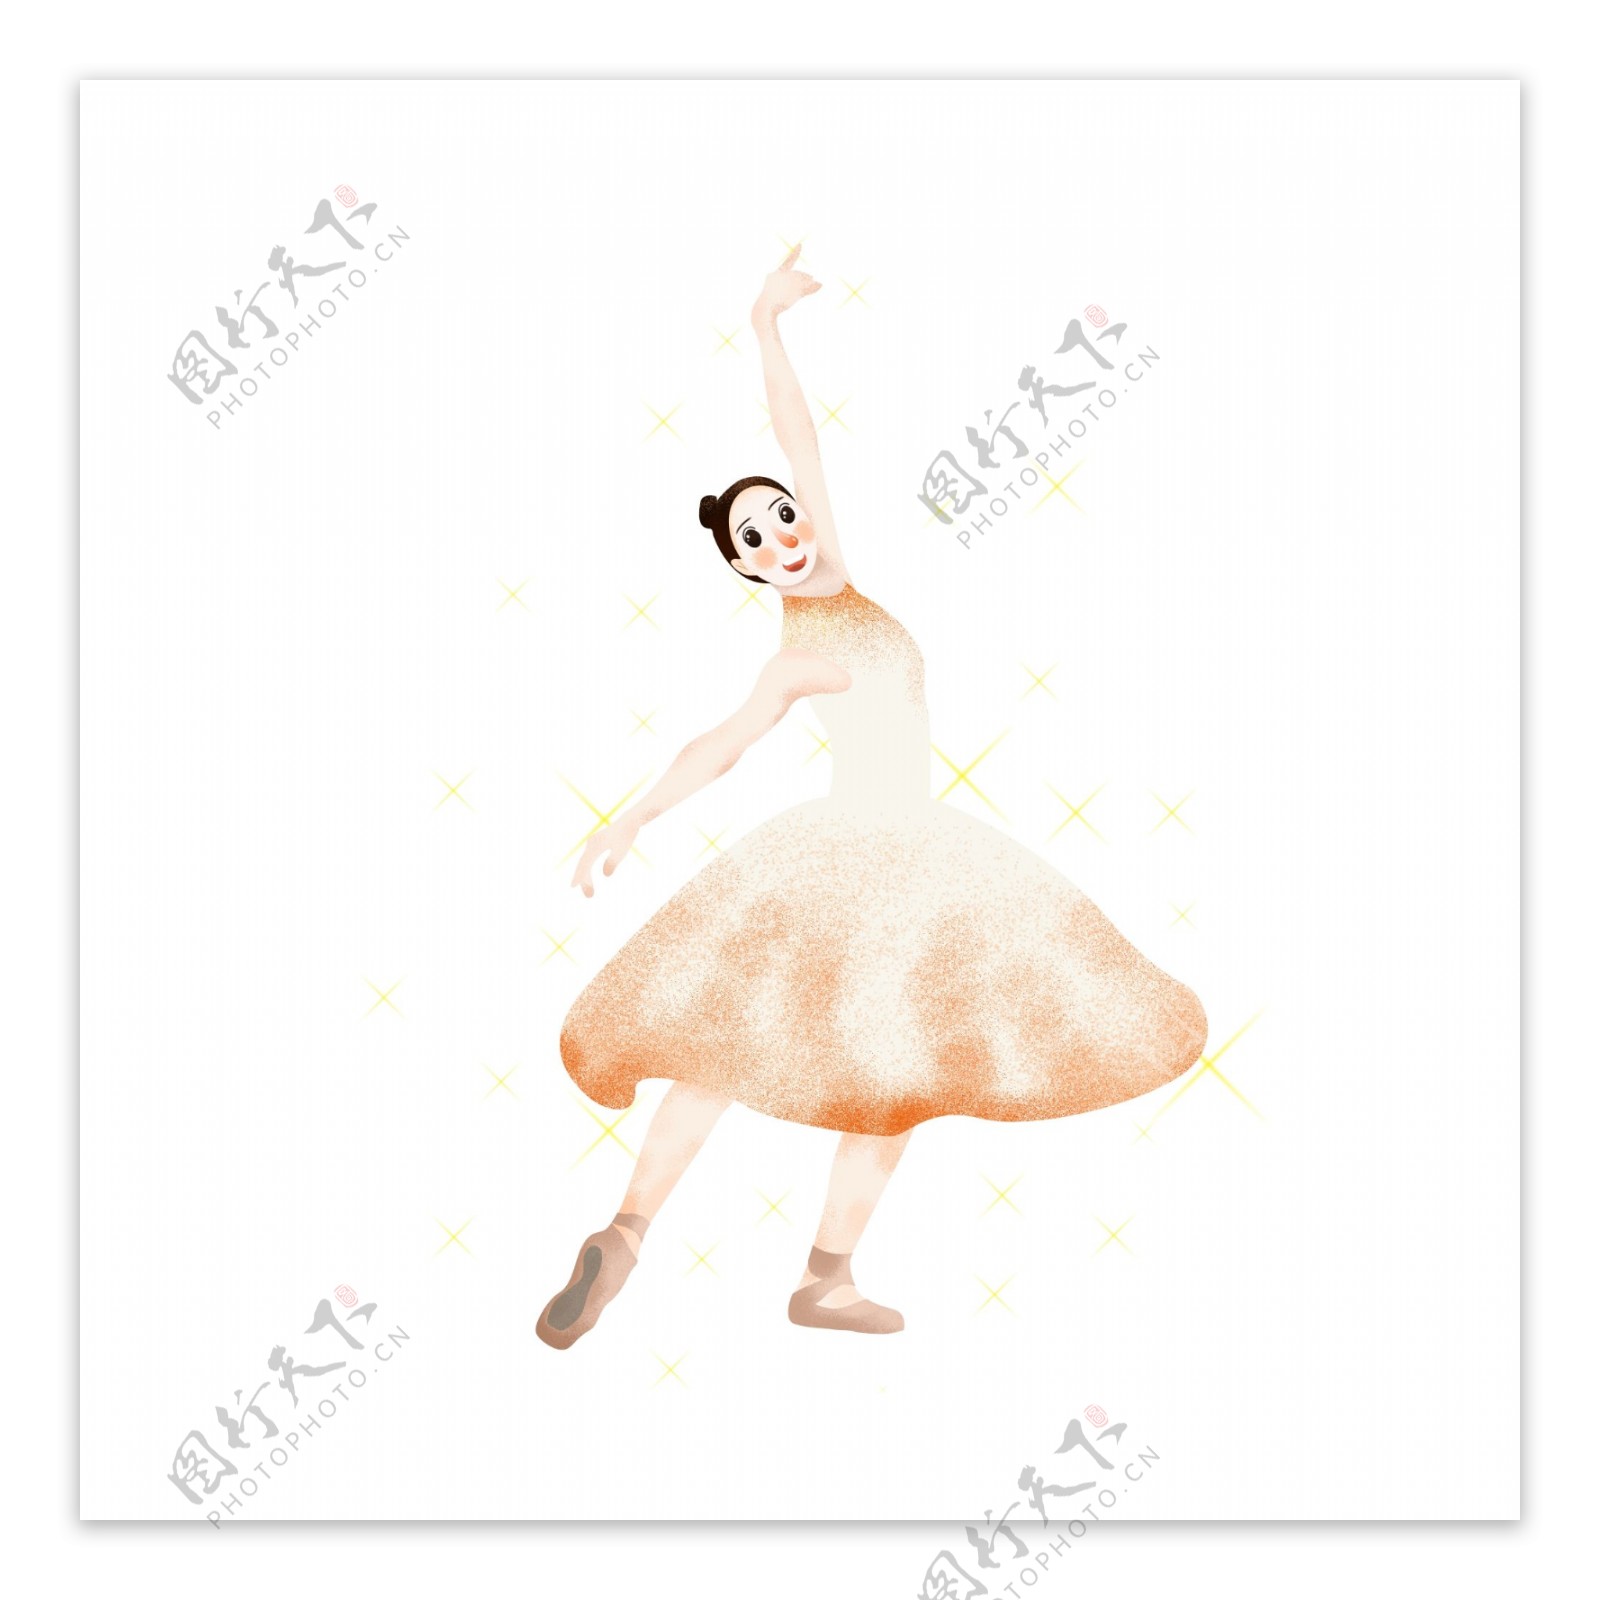 手绘穿白色长裙跳芭蕾舞时的女舞者人物元素